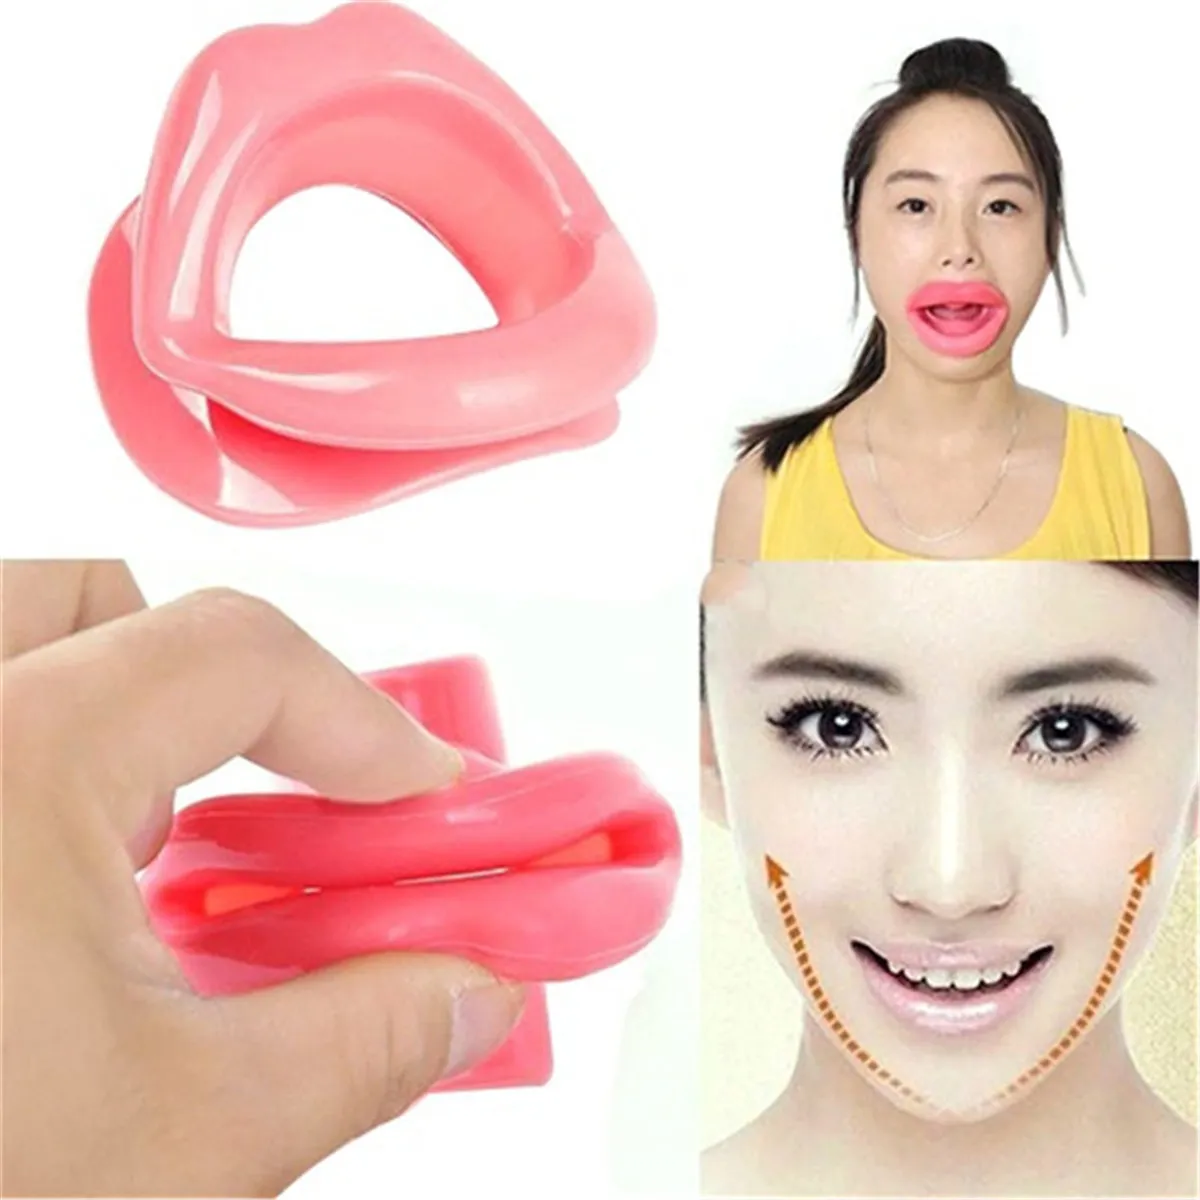 Siliconen rubberen gezicht slankere oefening mondstuk spier anti rimpel lip trainer mond massager oefener mondstuk gezichtszorg